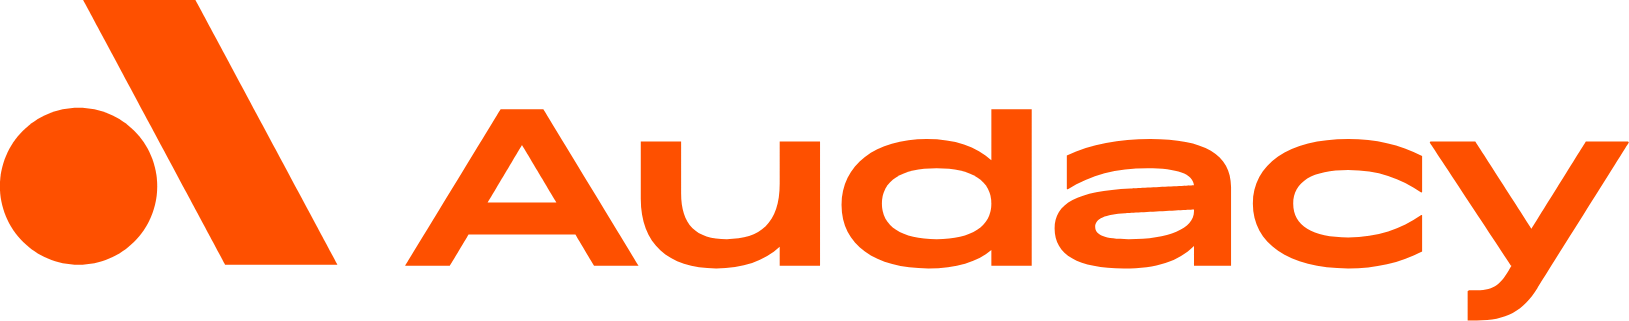 Audacy logo large (transparent PNG)